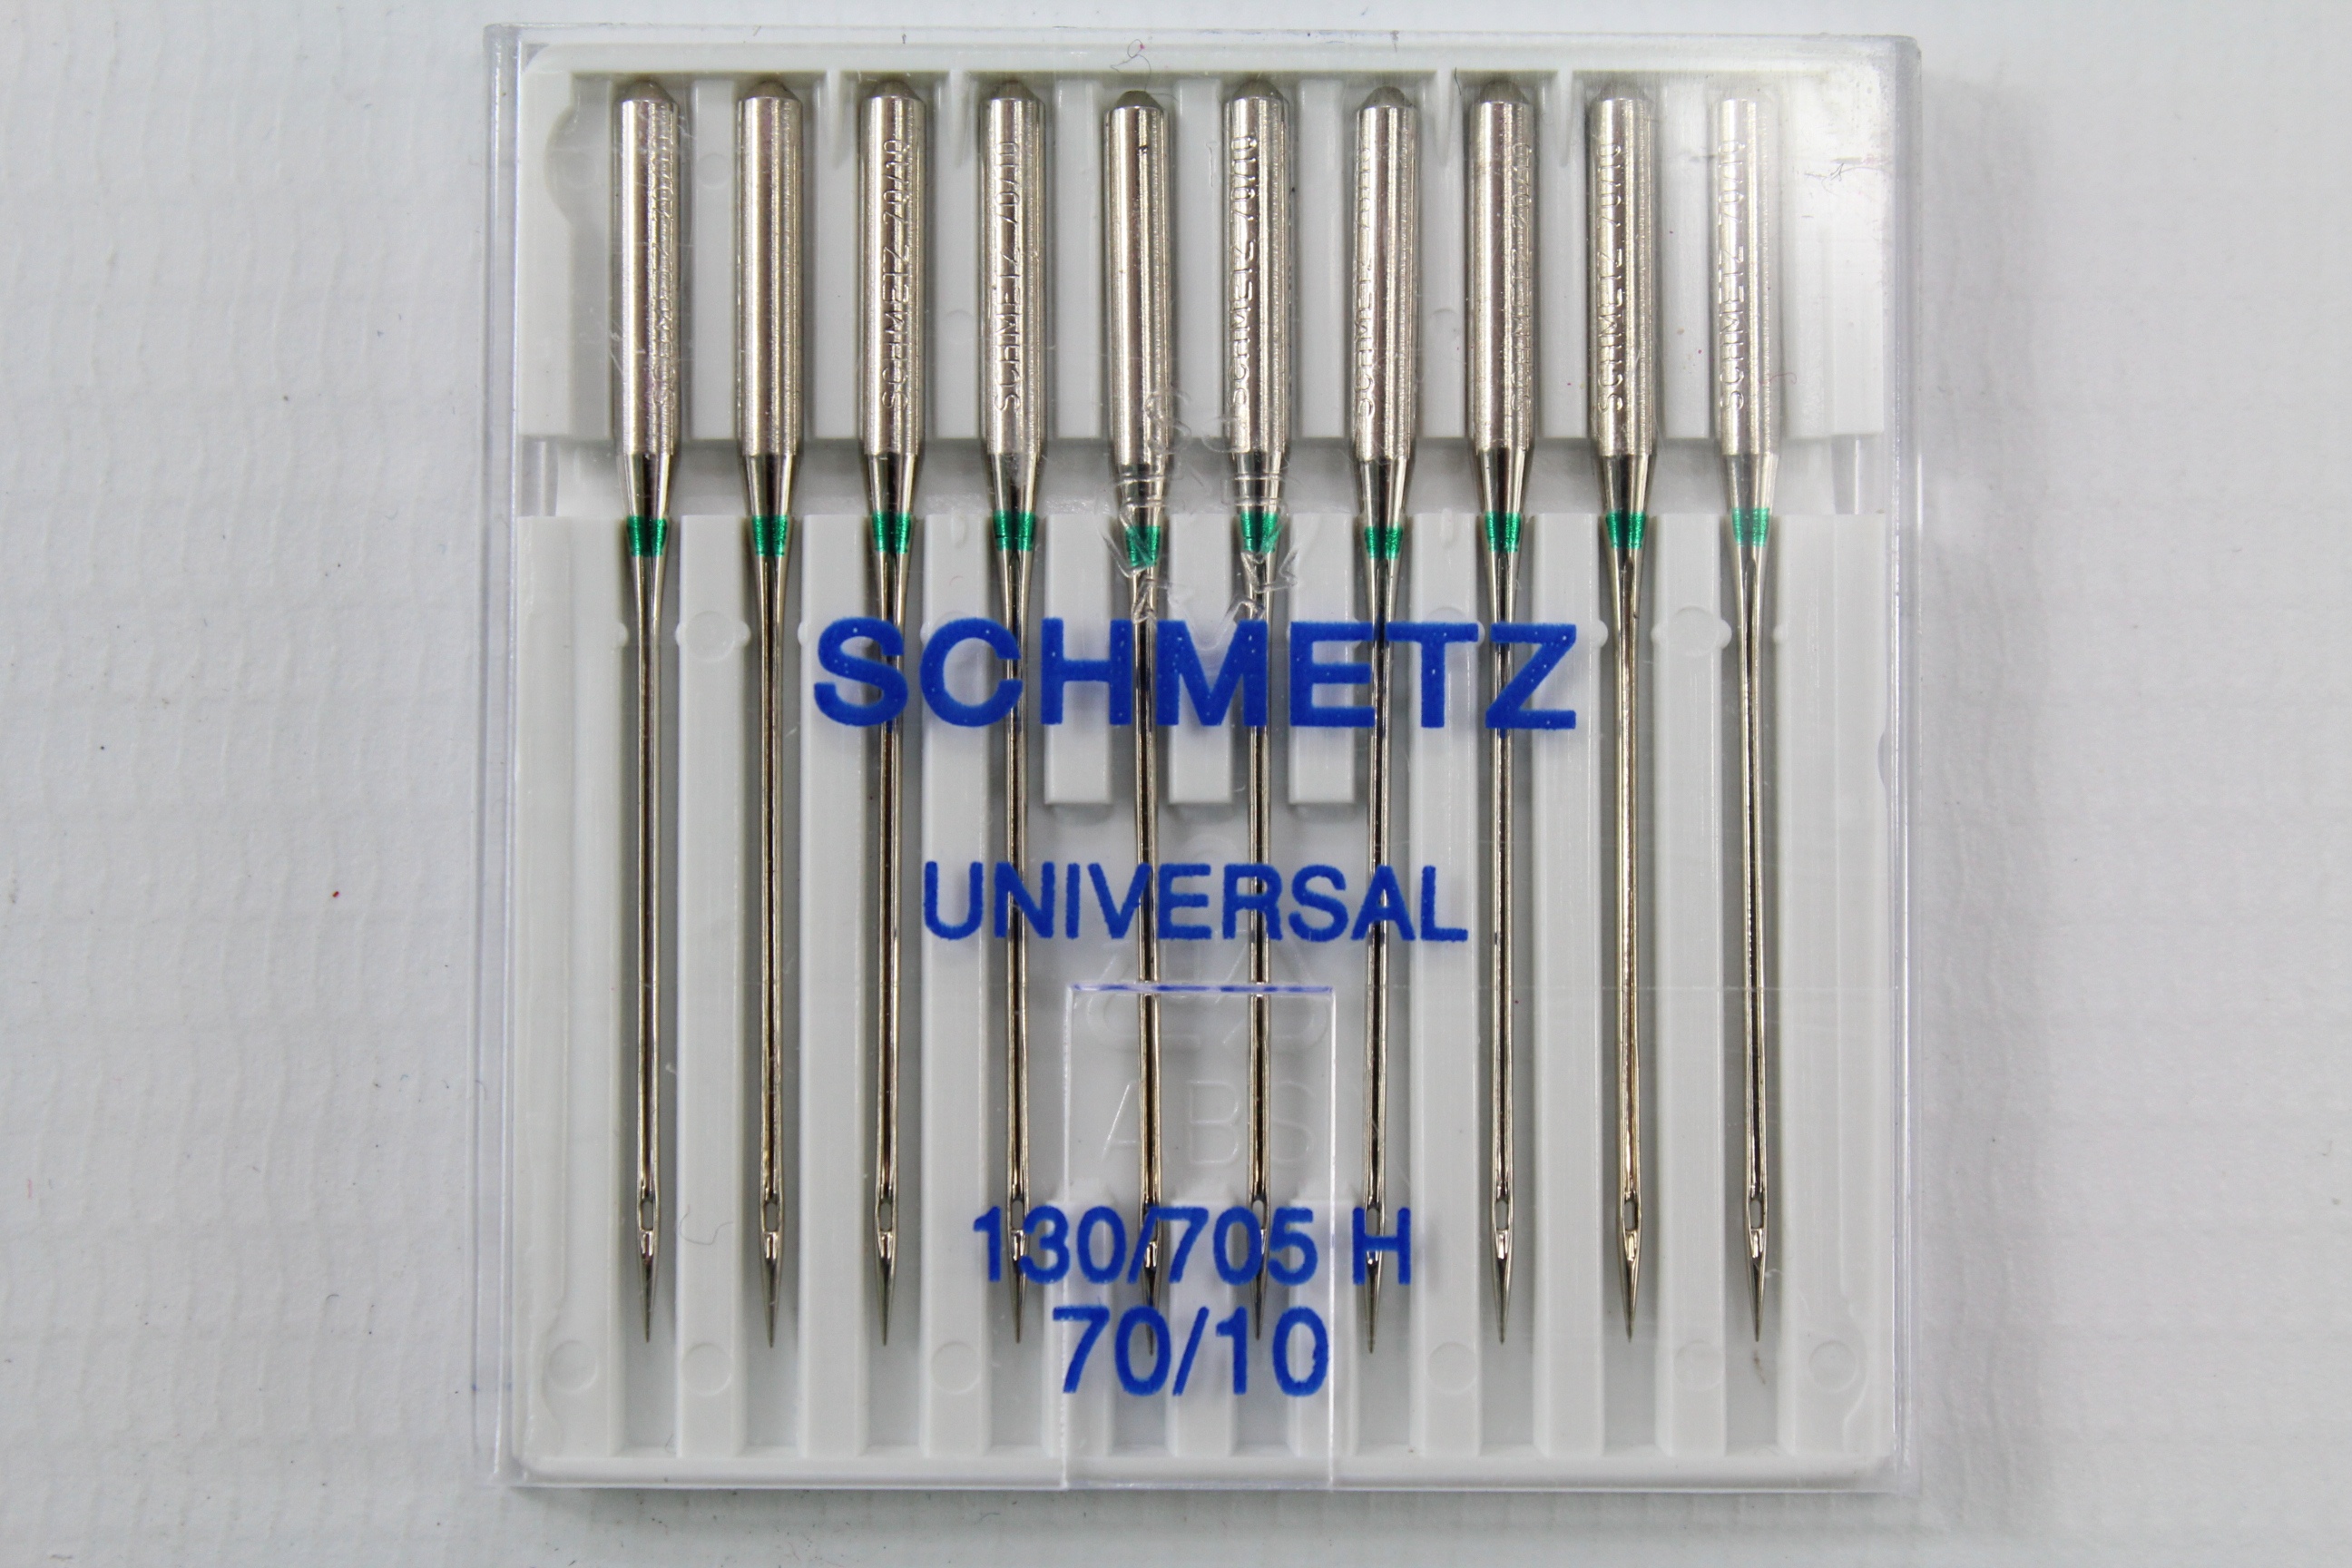 Schmetz Universal 130/705 H 70/10